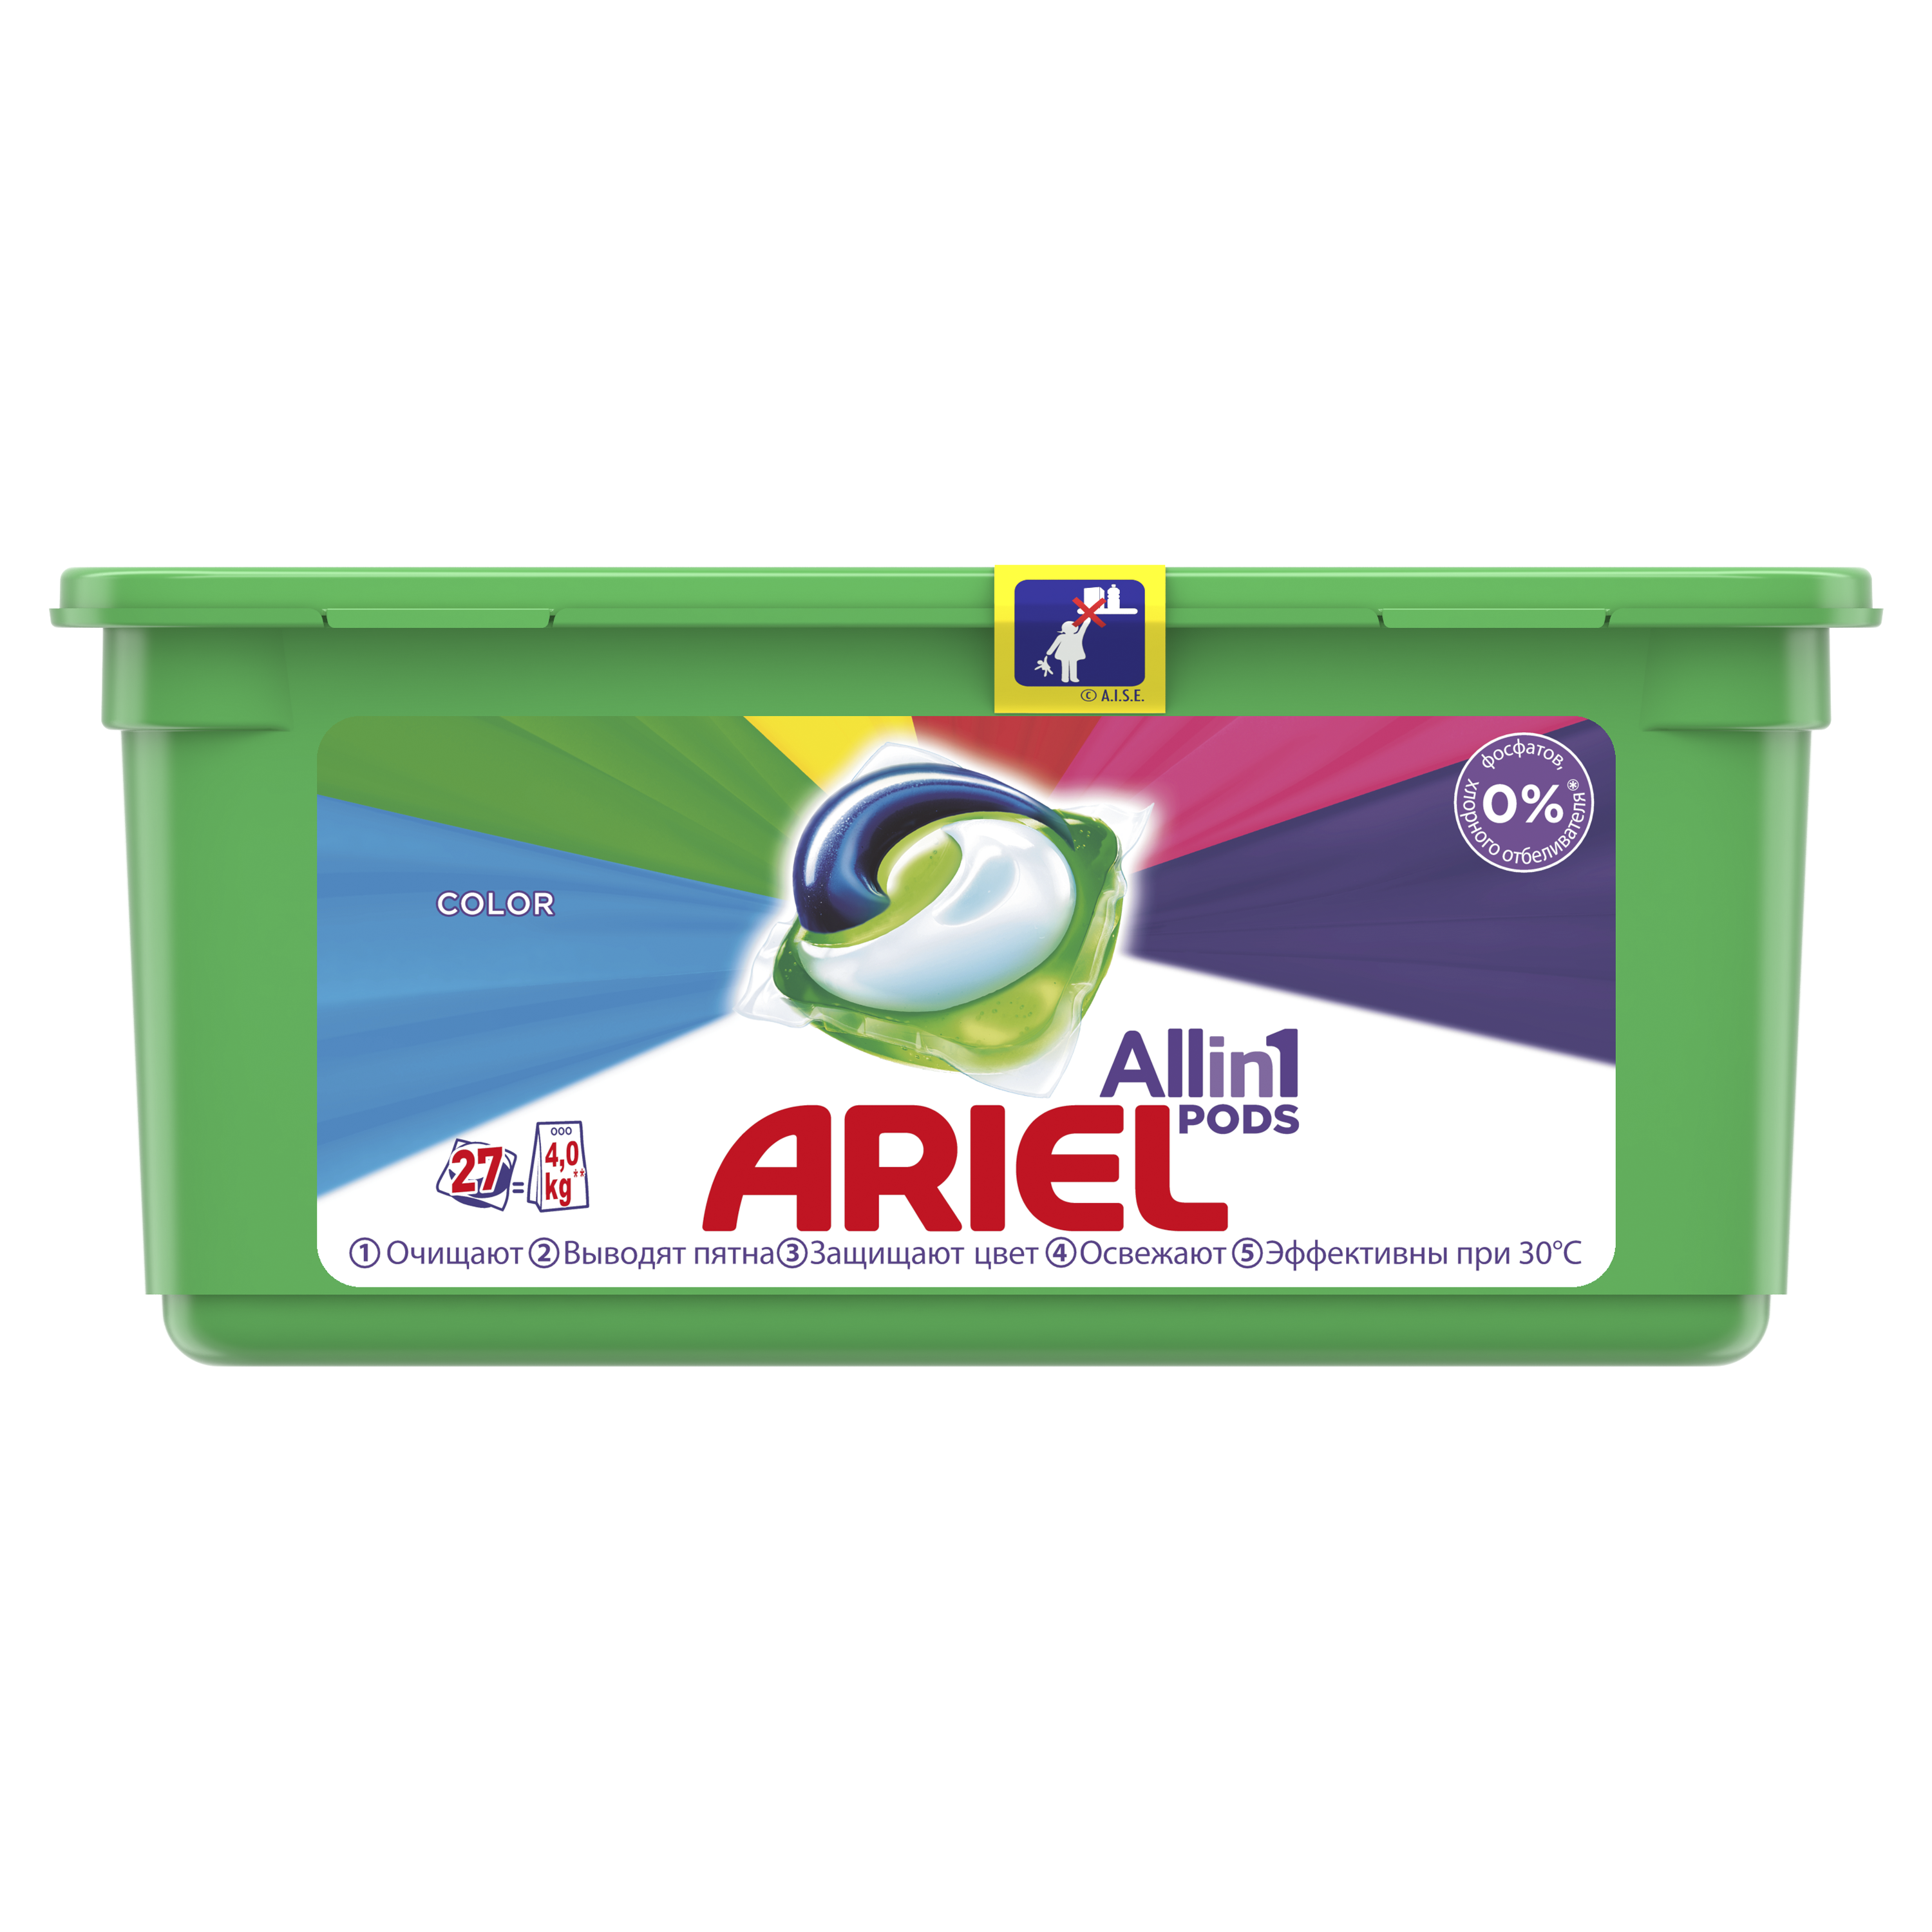 Капсули для прання Ariel Pods Все-в-1 Color, 27 шт. - фото 1